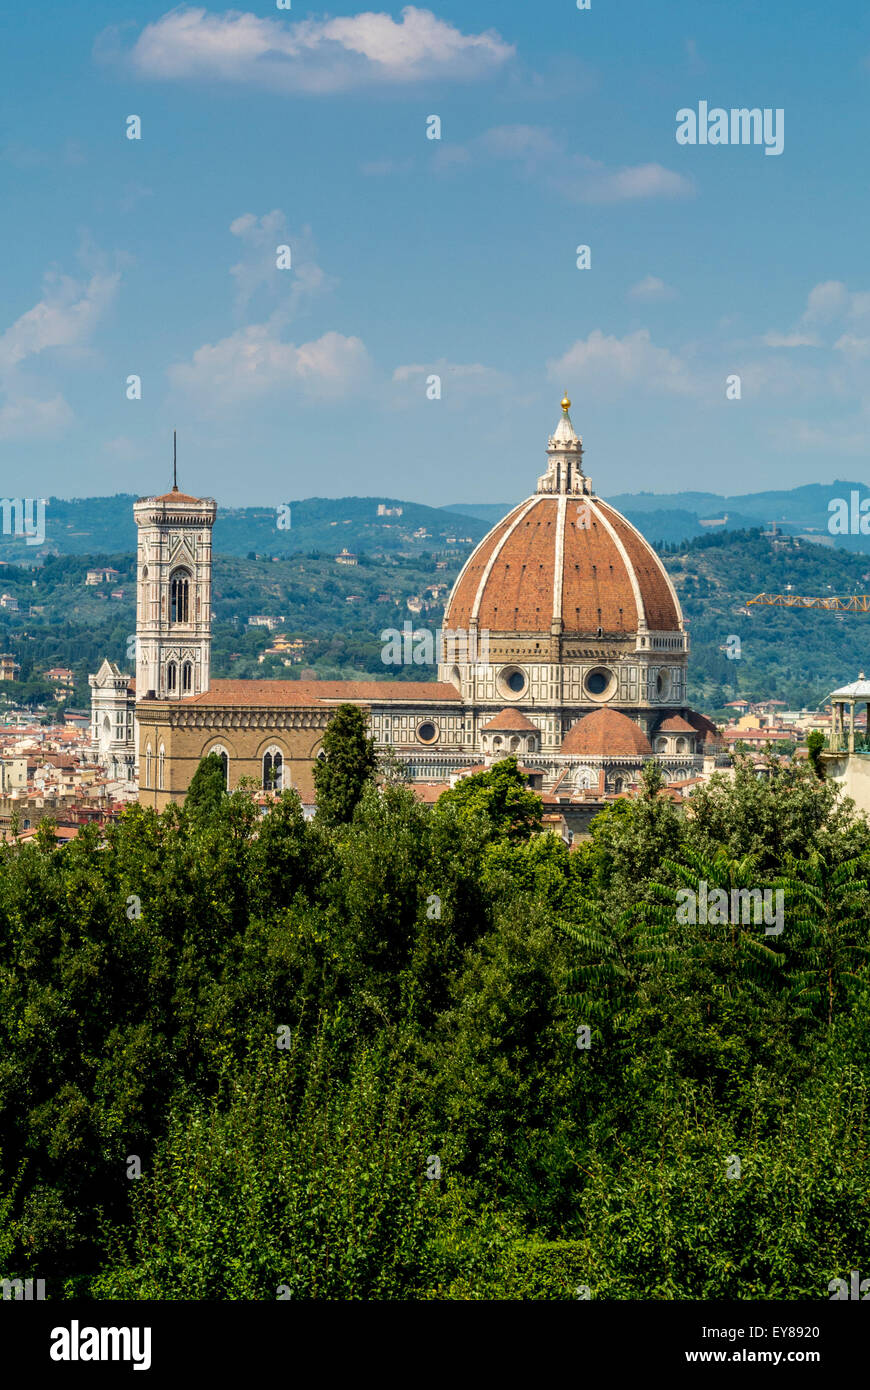 Erhöhter Blick auf die Kathedrale von Florenz vom Fort Belvedere aus gesehen. Florenz, Italien. Stockfoto